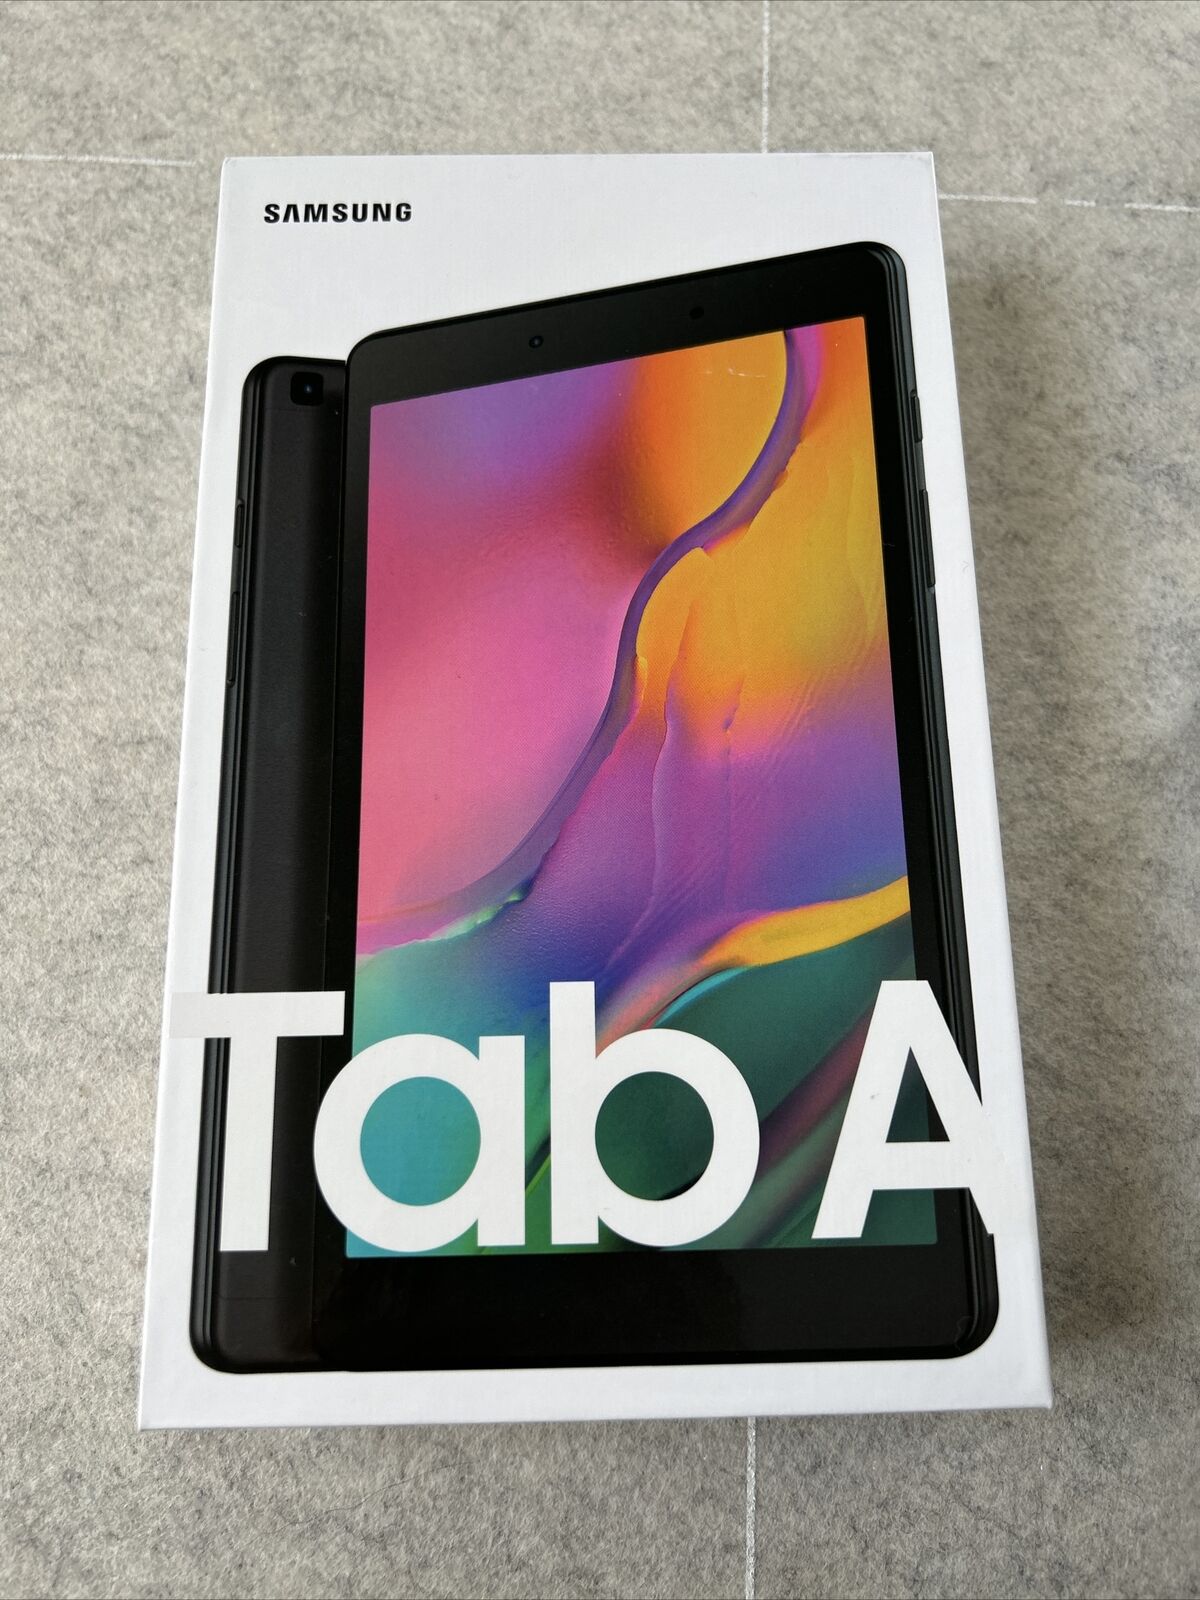 NEW Samsung Galaxy Tab A 32GB, Wi-Fi (Unlocked) 8 inch Tablet - Black